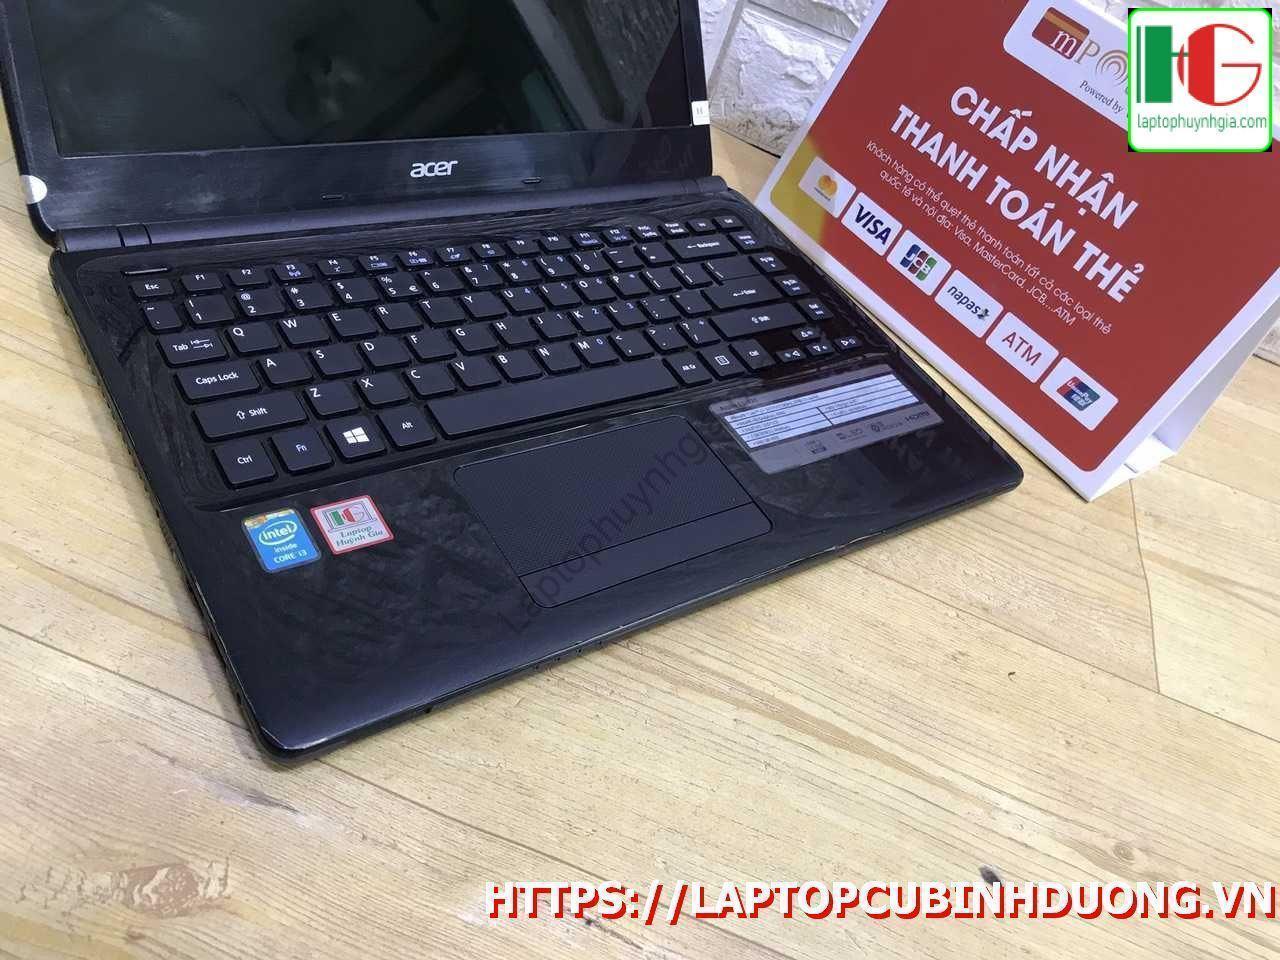 Laptop Acer E1 471 I3 3217u 4g 500g Lcd 14 Laptopcubinhduong.vn 5 [kích Thước Gốc] Result